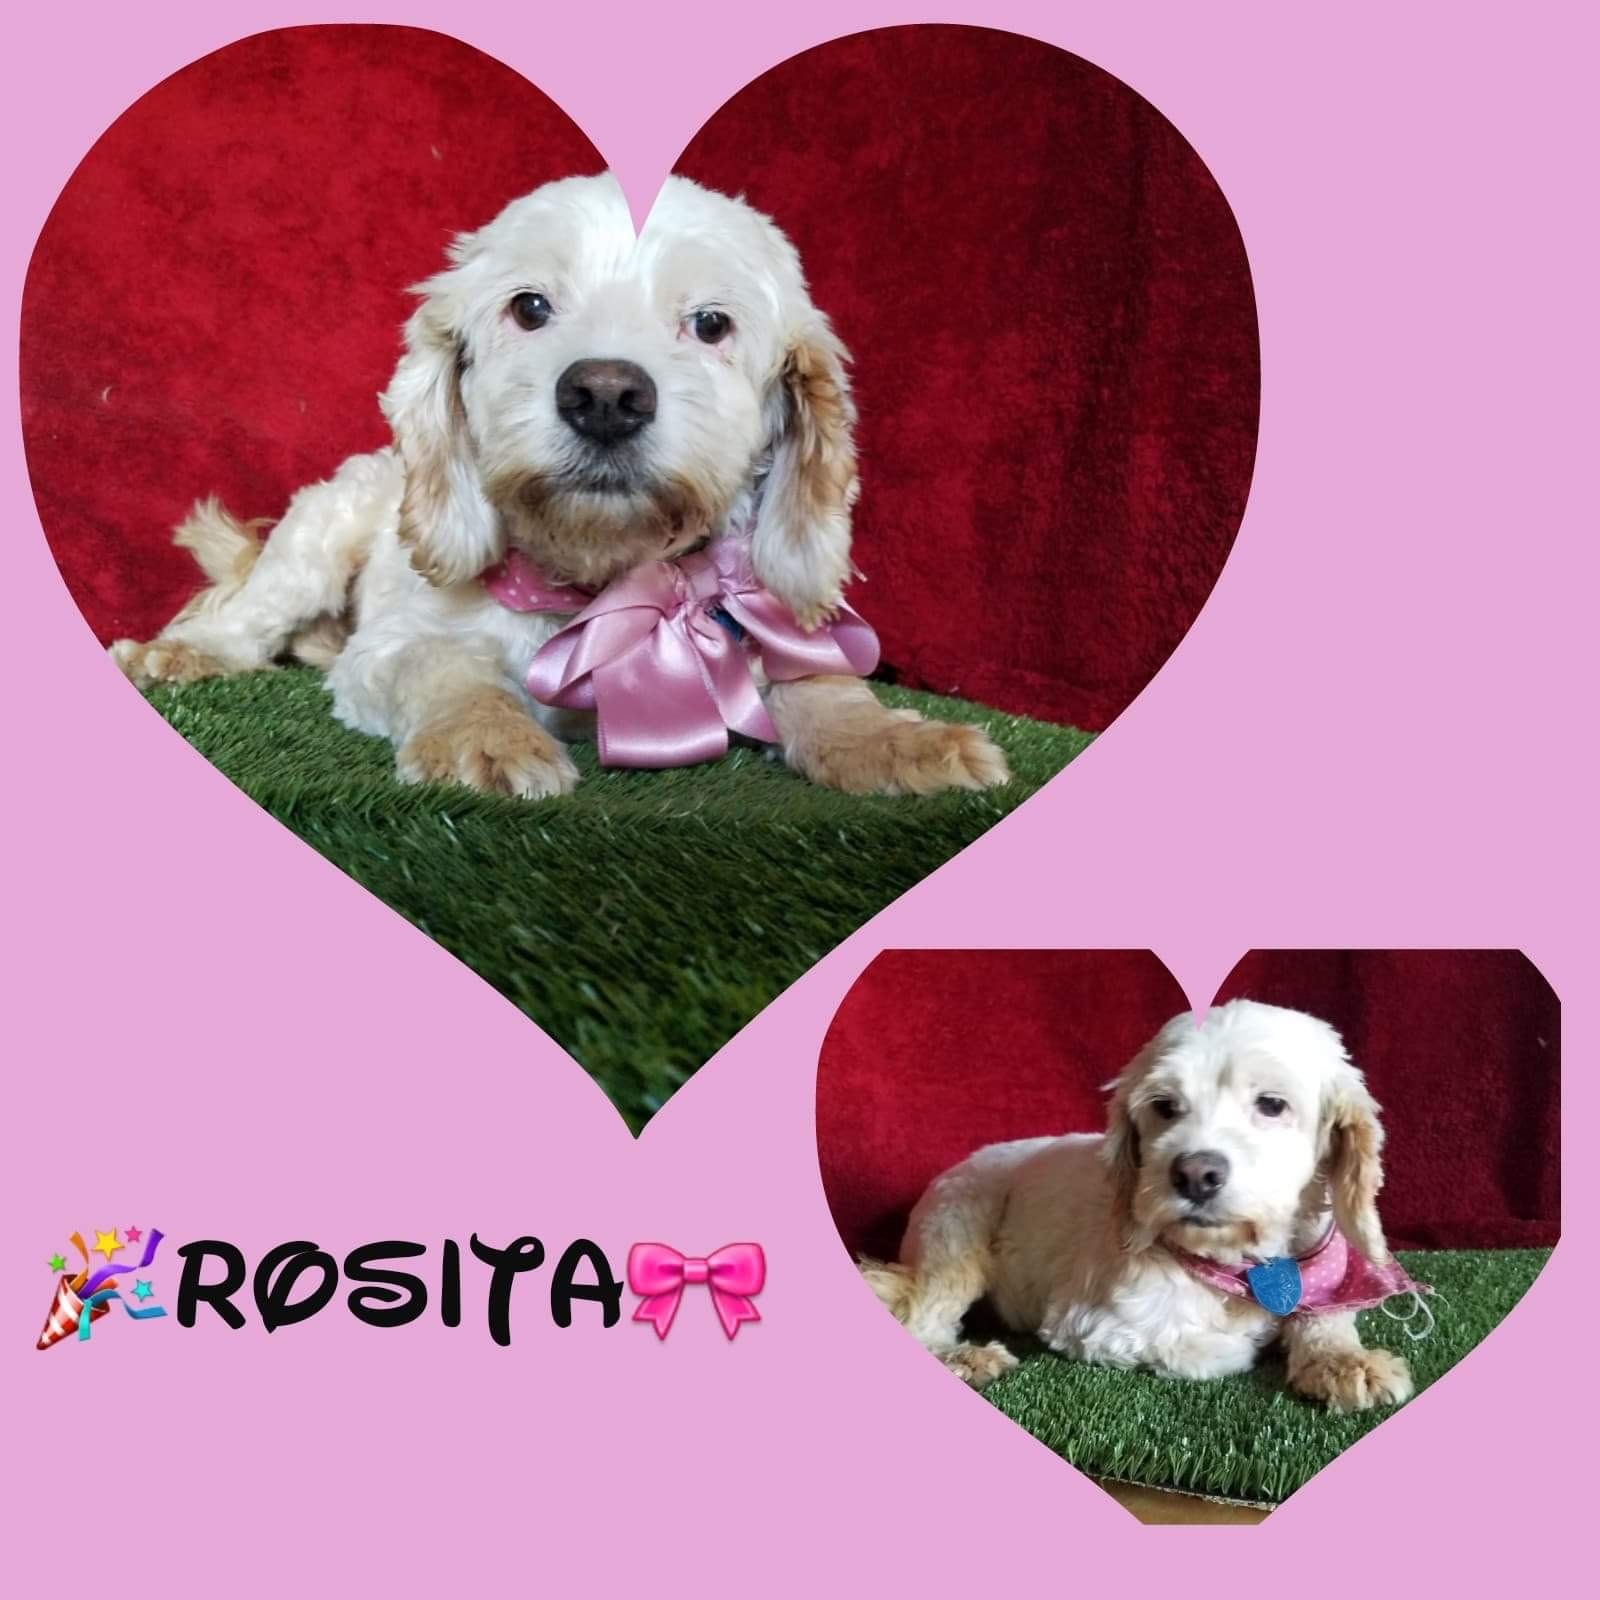 Rosita detail page